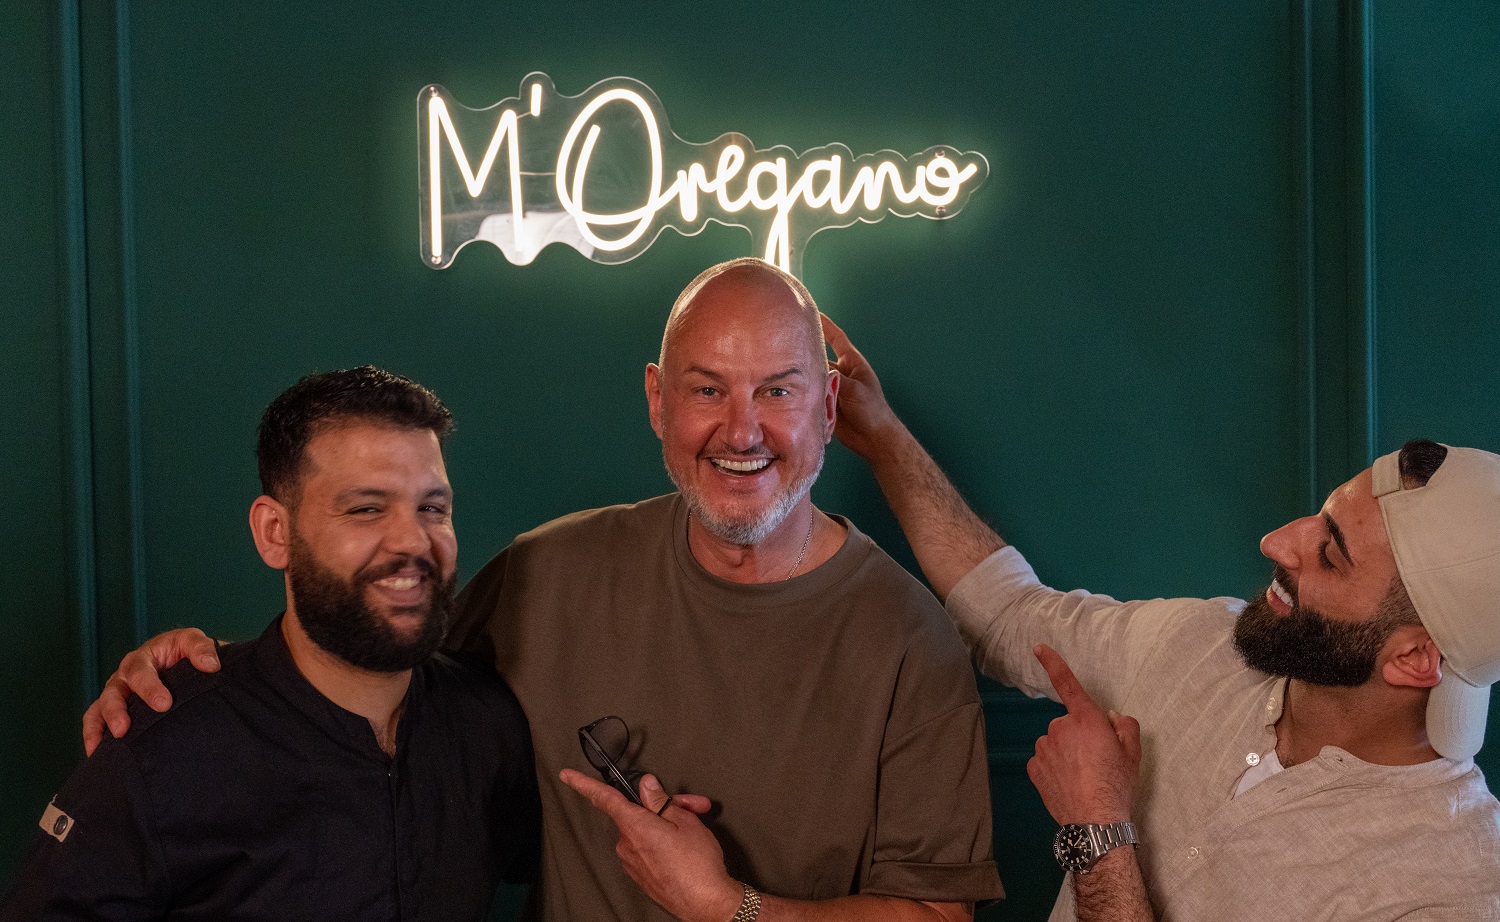 Frank Rosin, Mo und Abu Jassen stehen im Restaurant "M'Oregano in Ochtrup", wo levantinische Küche serviert wird. Zuvor hatten die drei traditionelles Ful medames und frisches Fladenbrot zubereitet.